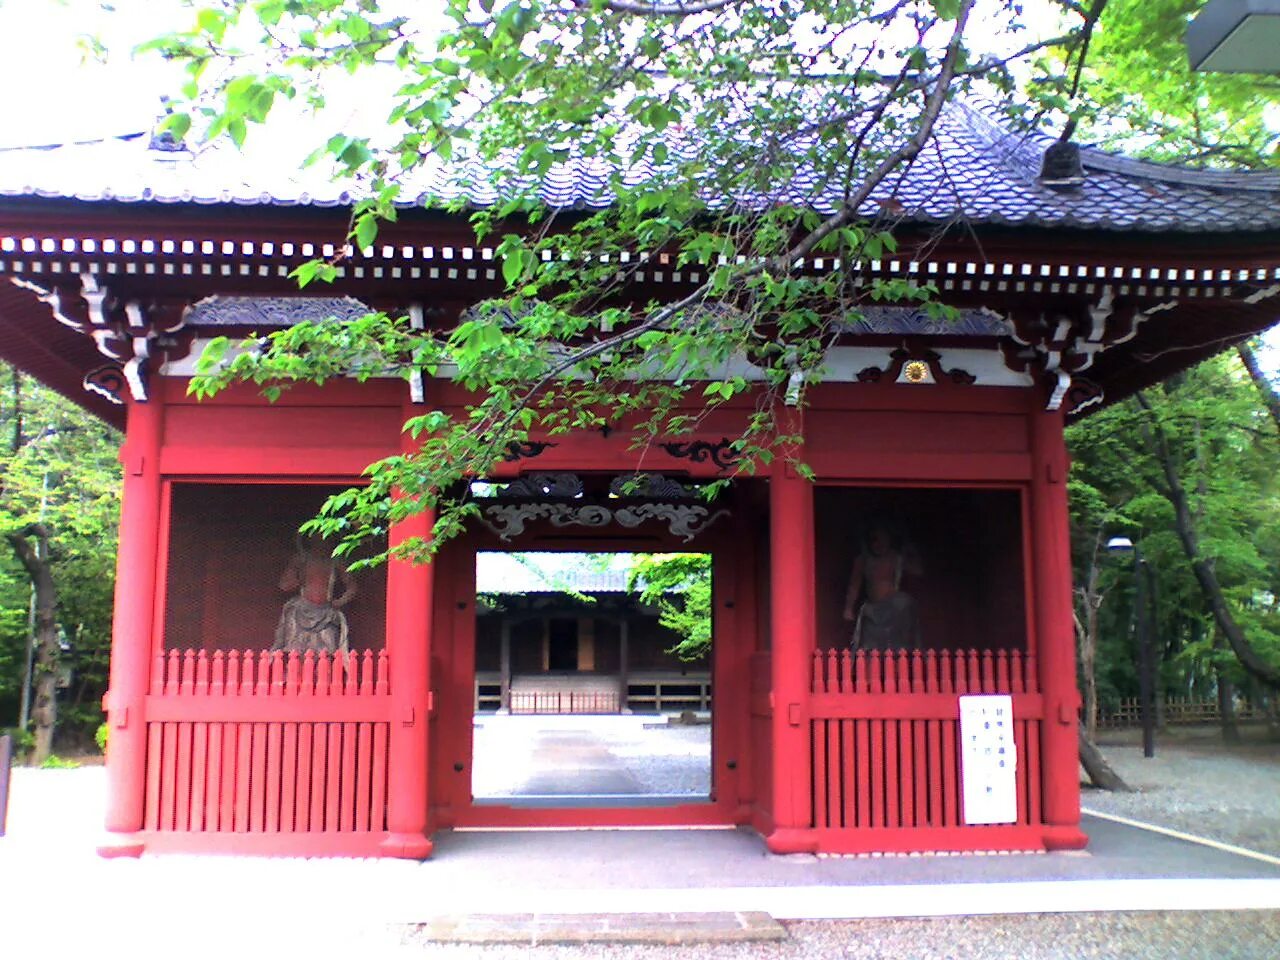 Temple gate. Ворота в храм в Японии. Япония Gate. Японские красные ворота. Японские входные ворота.